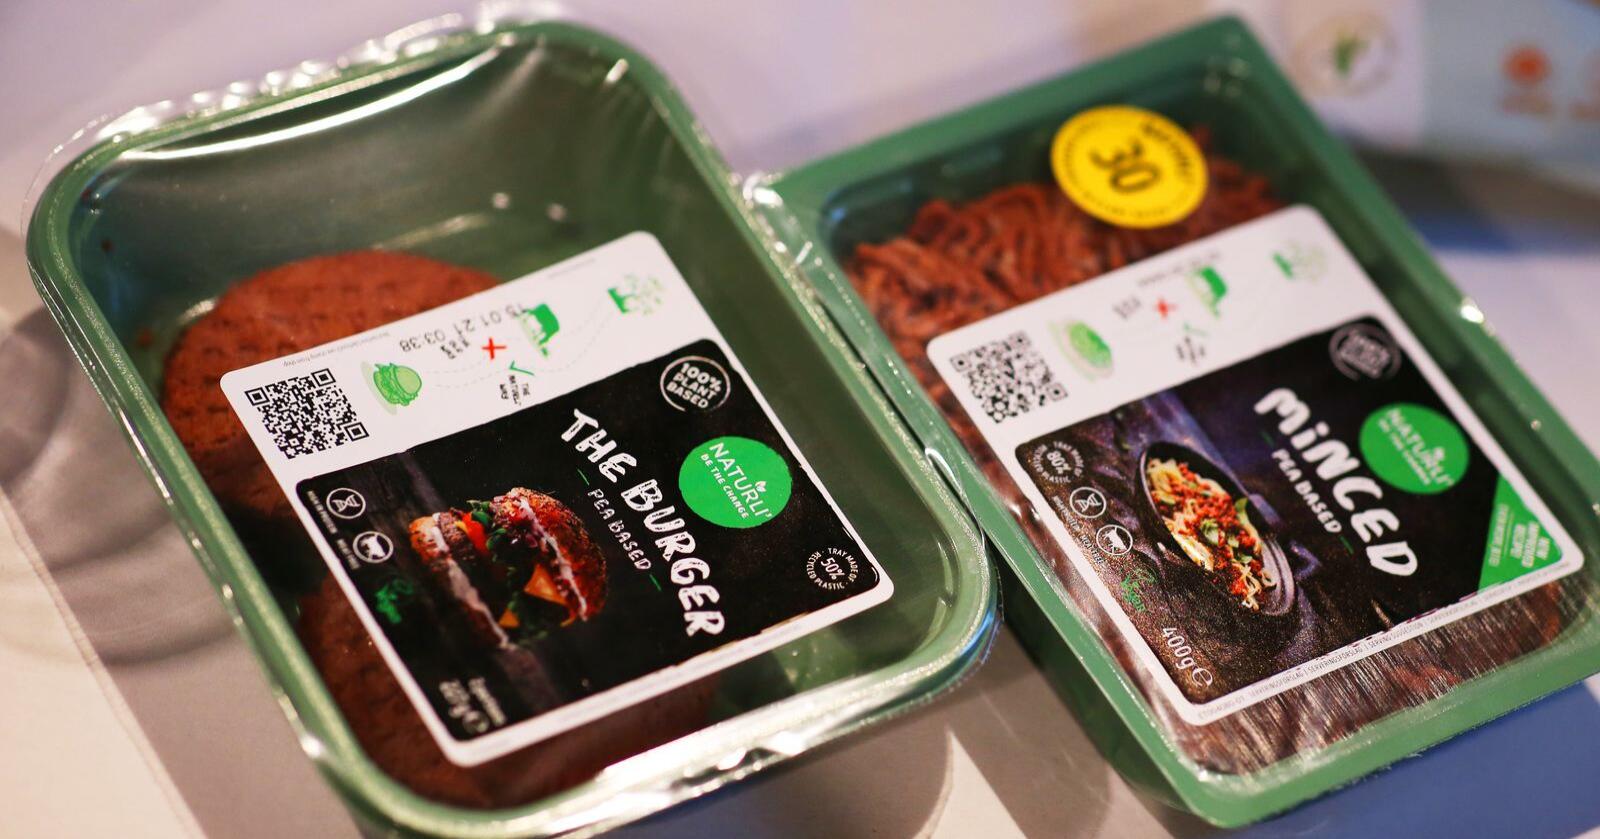 Ertebasert kjøttdeig og burgere er blant de nye vegetarnyhetene fra Orkla, og de kommer i norske butikker i februar. Å spise mer plantebaserte kjøtterstatninger har blitt en tydelig trend det siste året, ifølge matforsker. Foto: Ørn E. Borgen / NTB scanpix